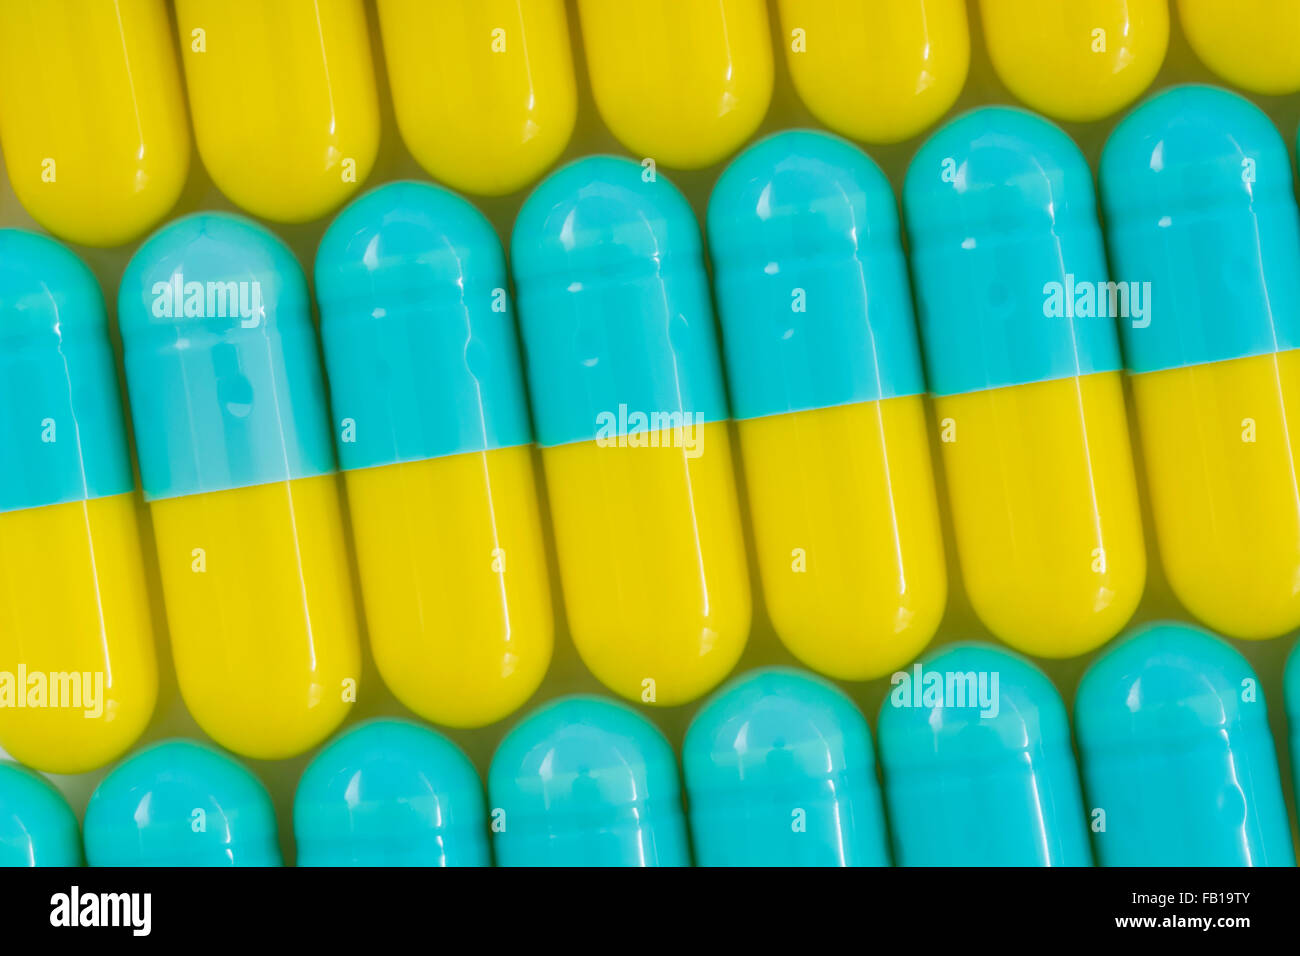 Primer plano de pastillas - forma de cápsula hecha de gelatina. Pastillas amarillas / azules. Metáfora tomando a las compañías farmacéuticas estadounidenses sobre los altos precios de los medicamentos, ensayos de drogas. Foto de stock